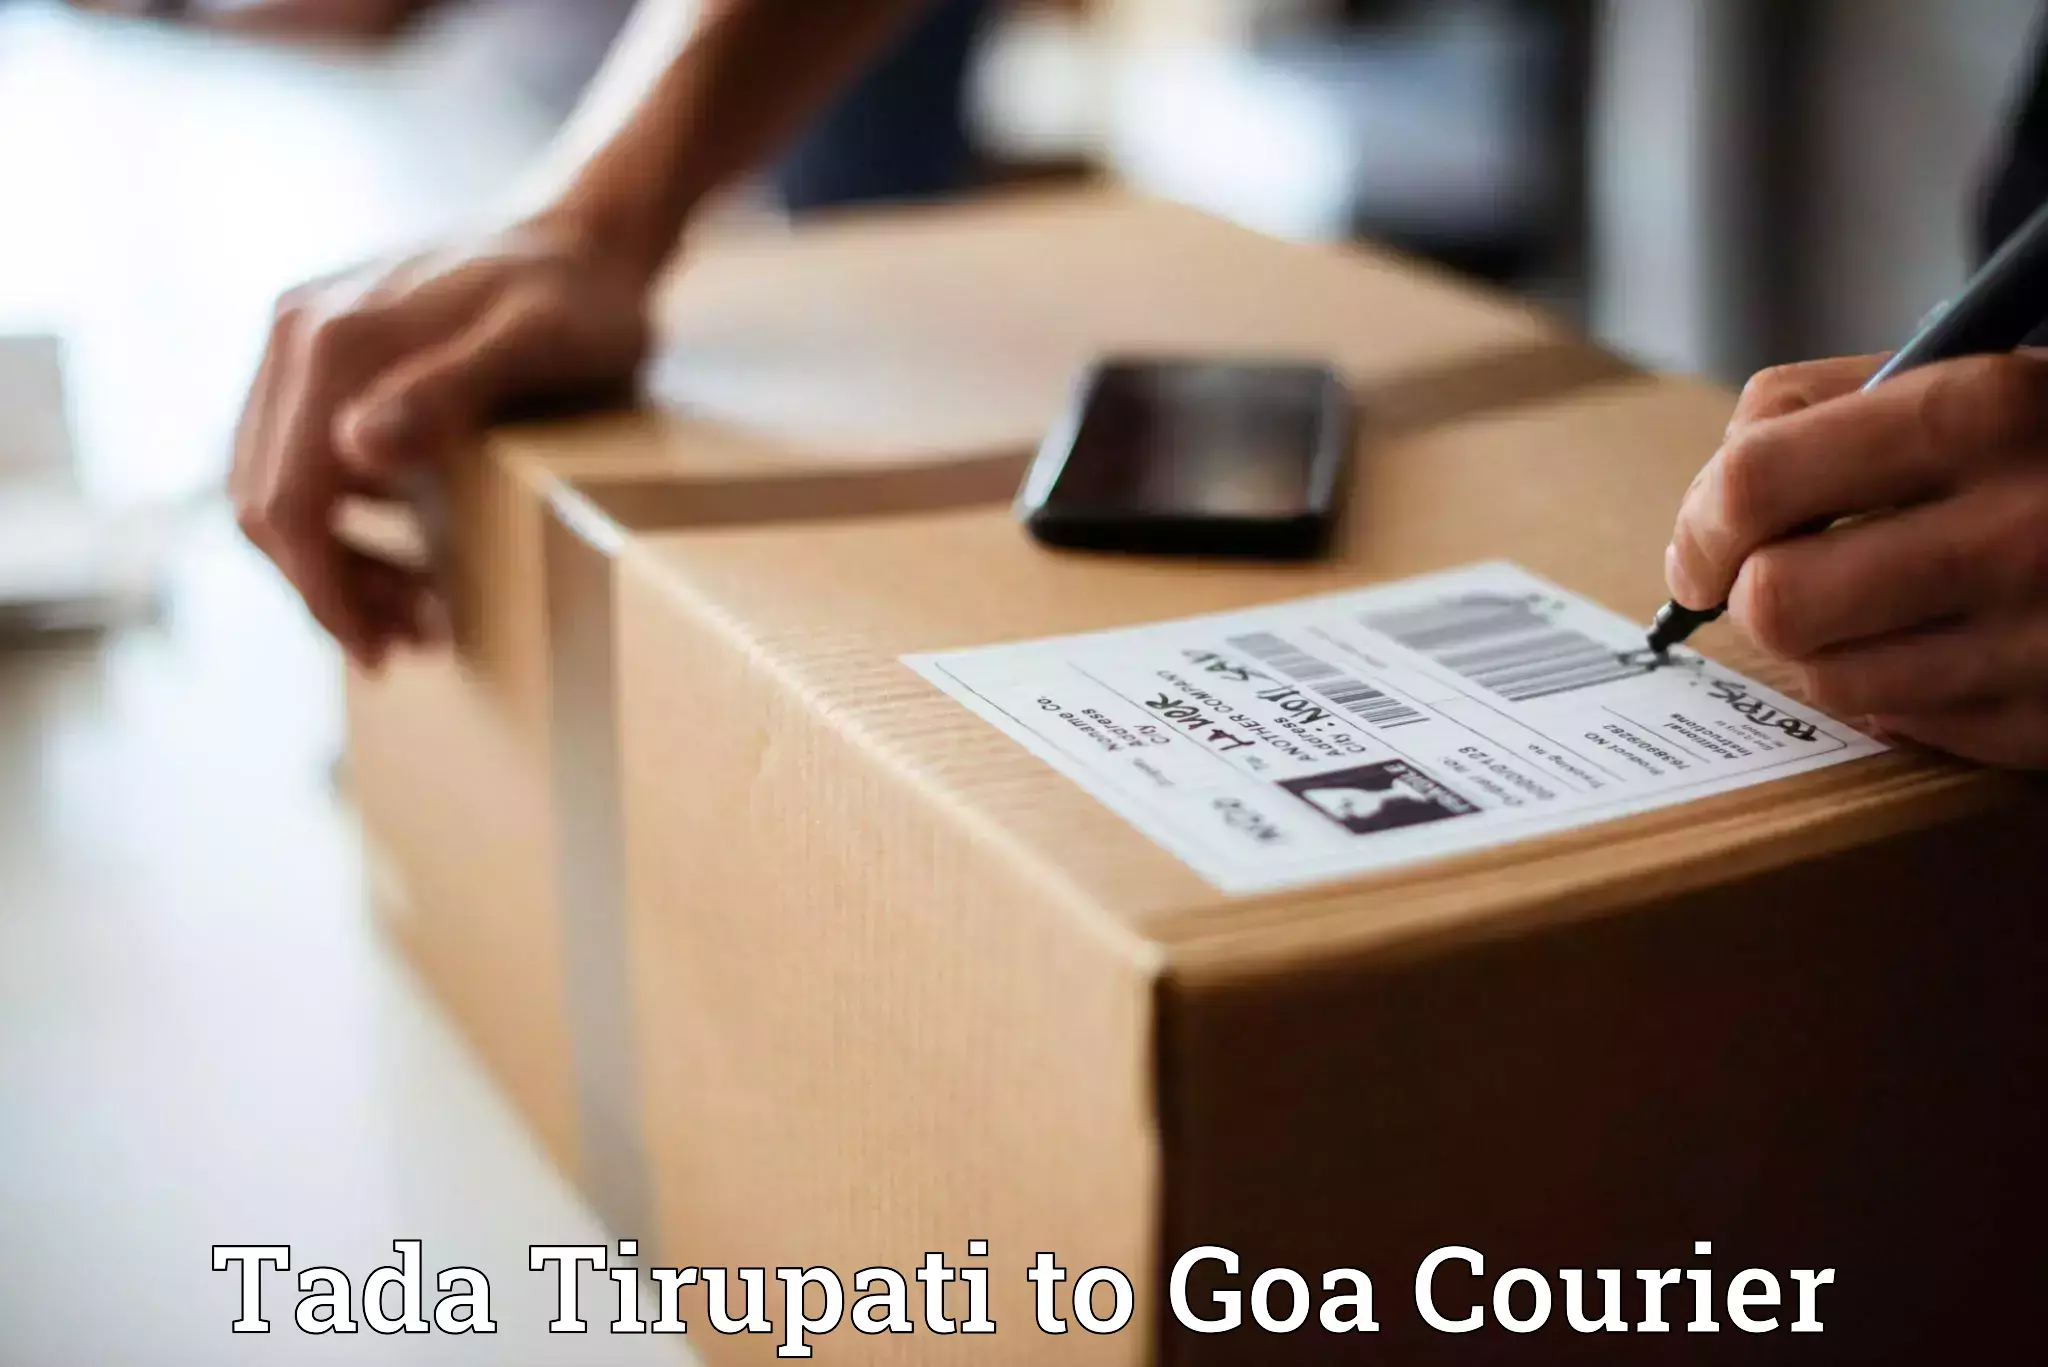 Next-day freight services Tada Tirupati to IIT Goa